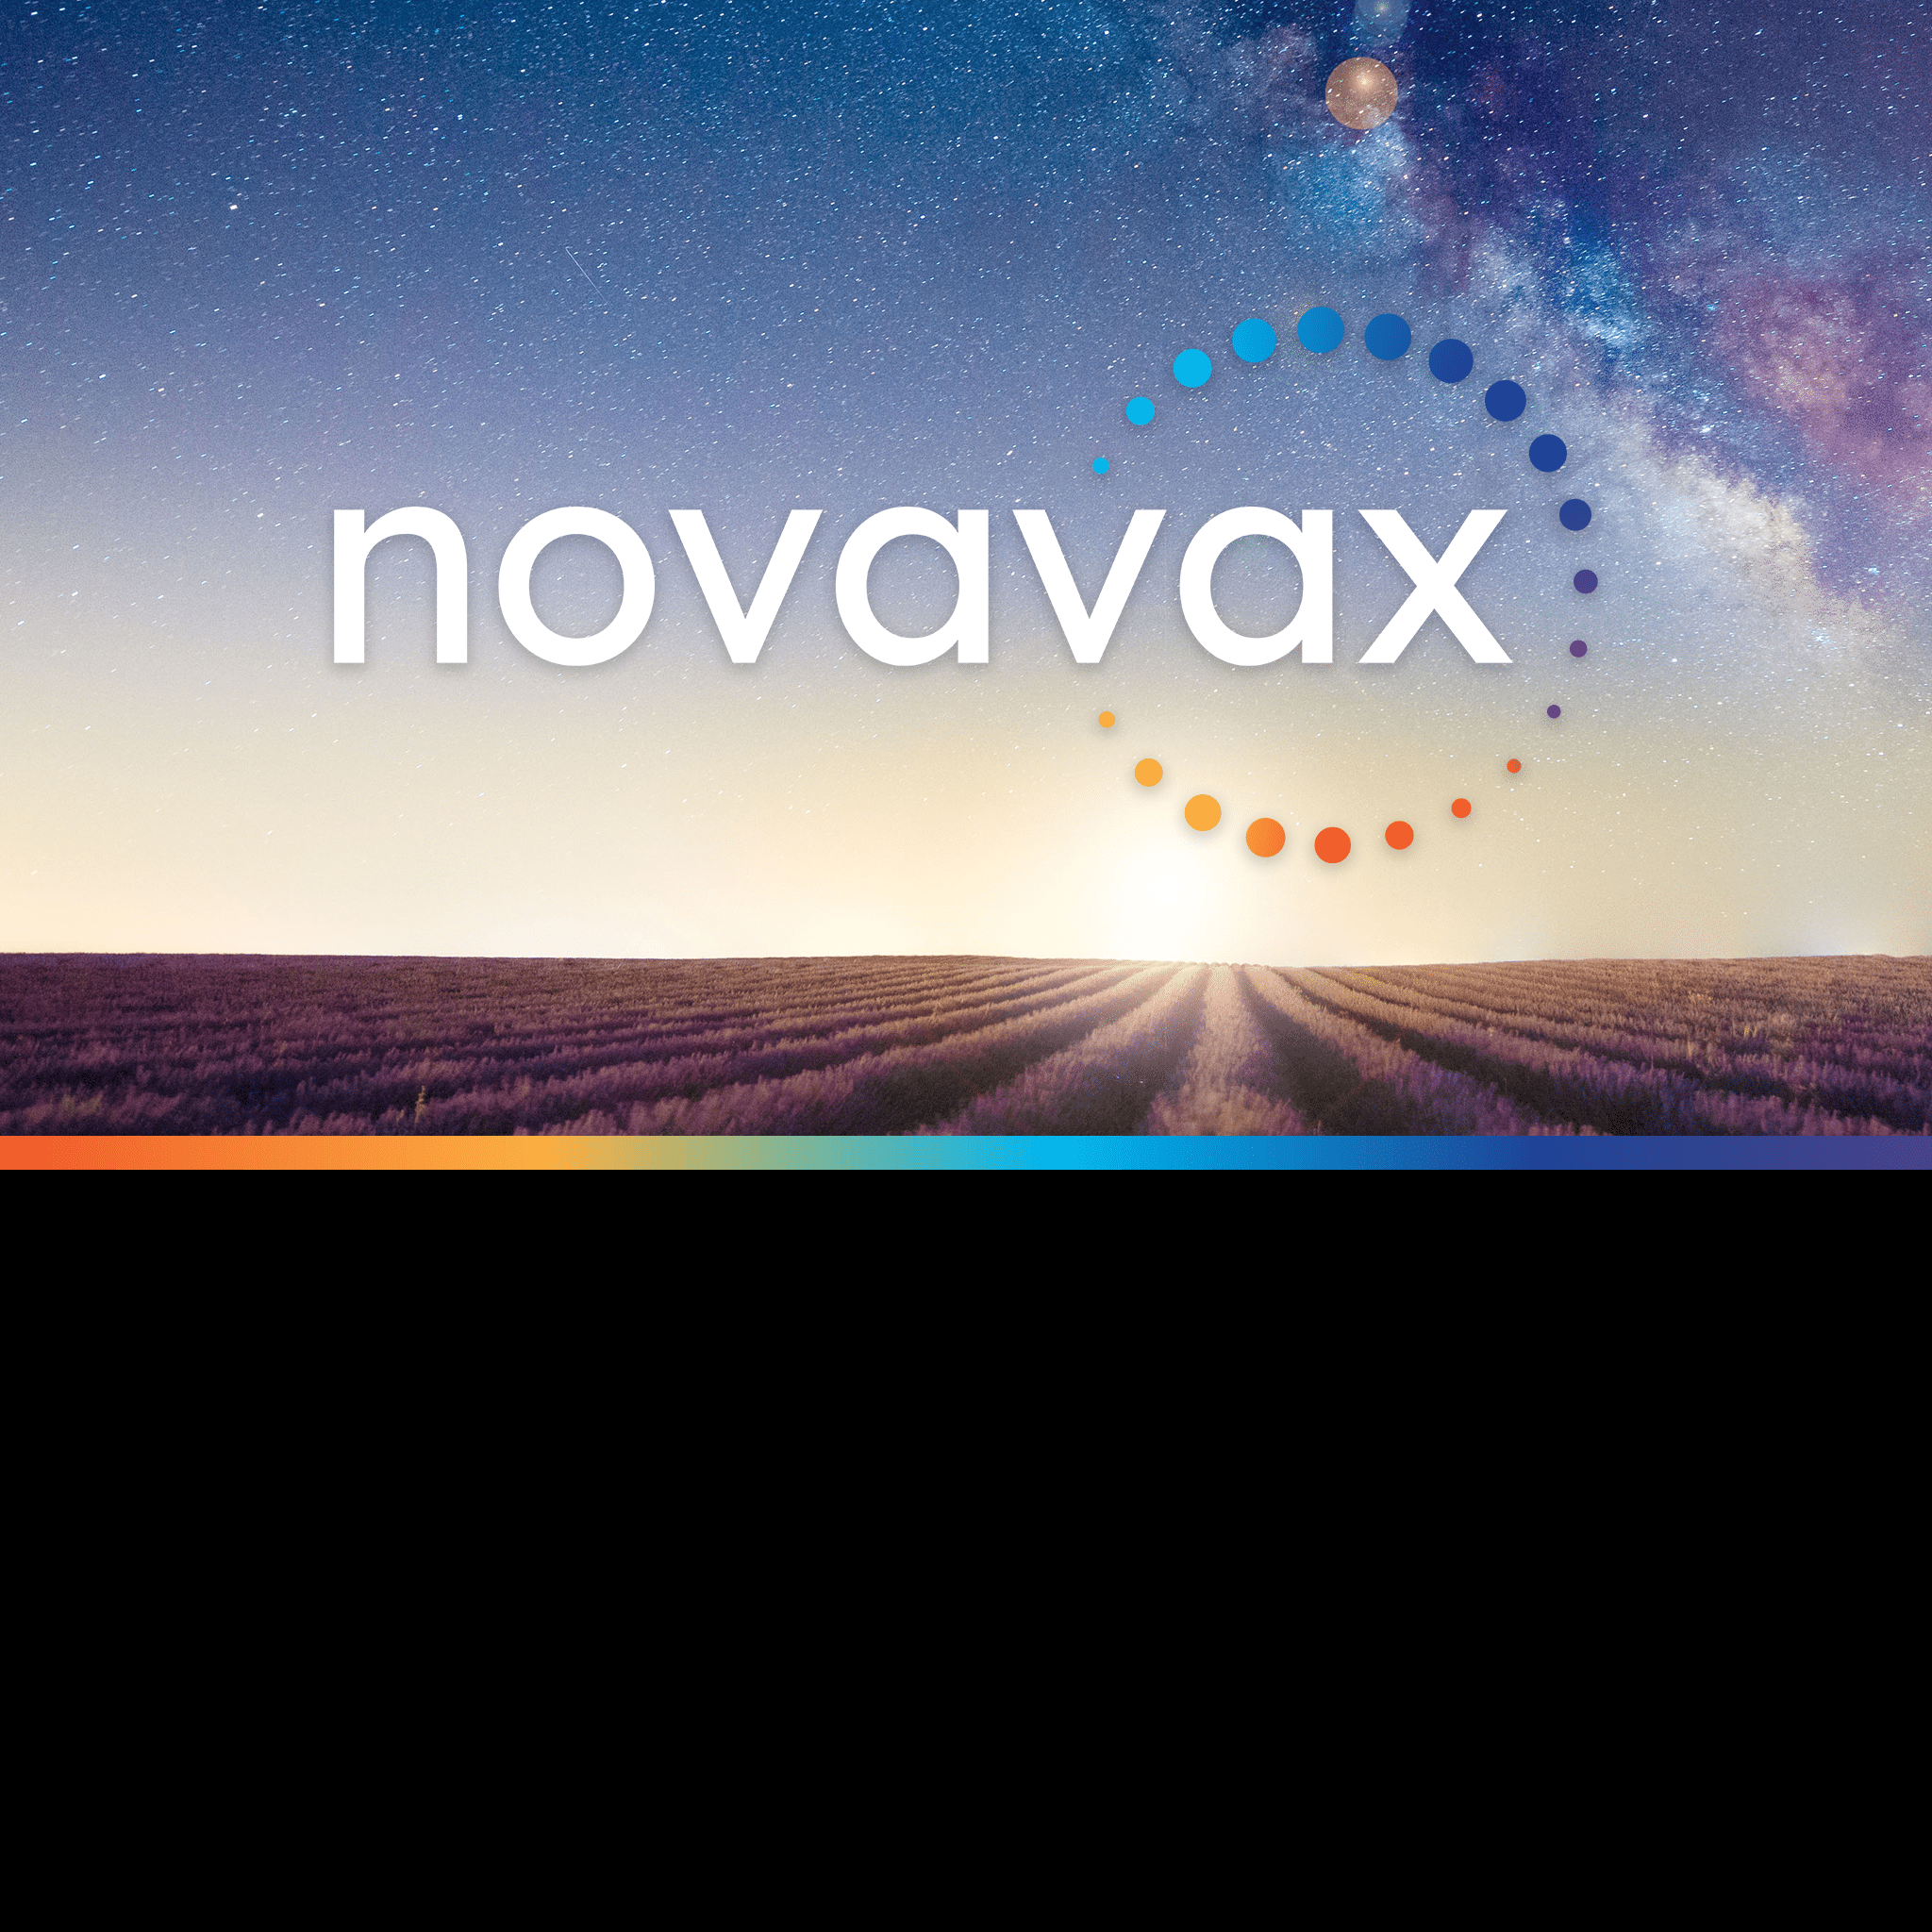 ir.novavax.com